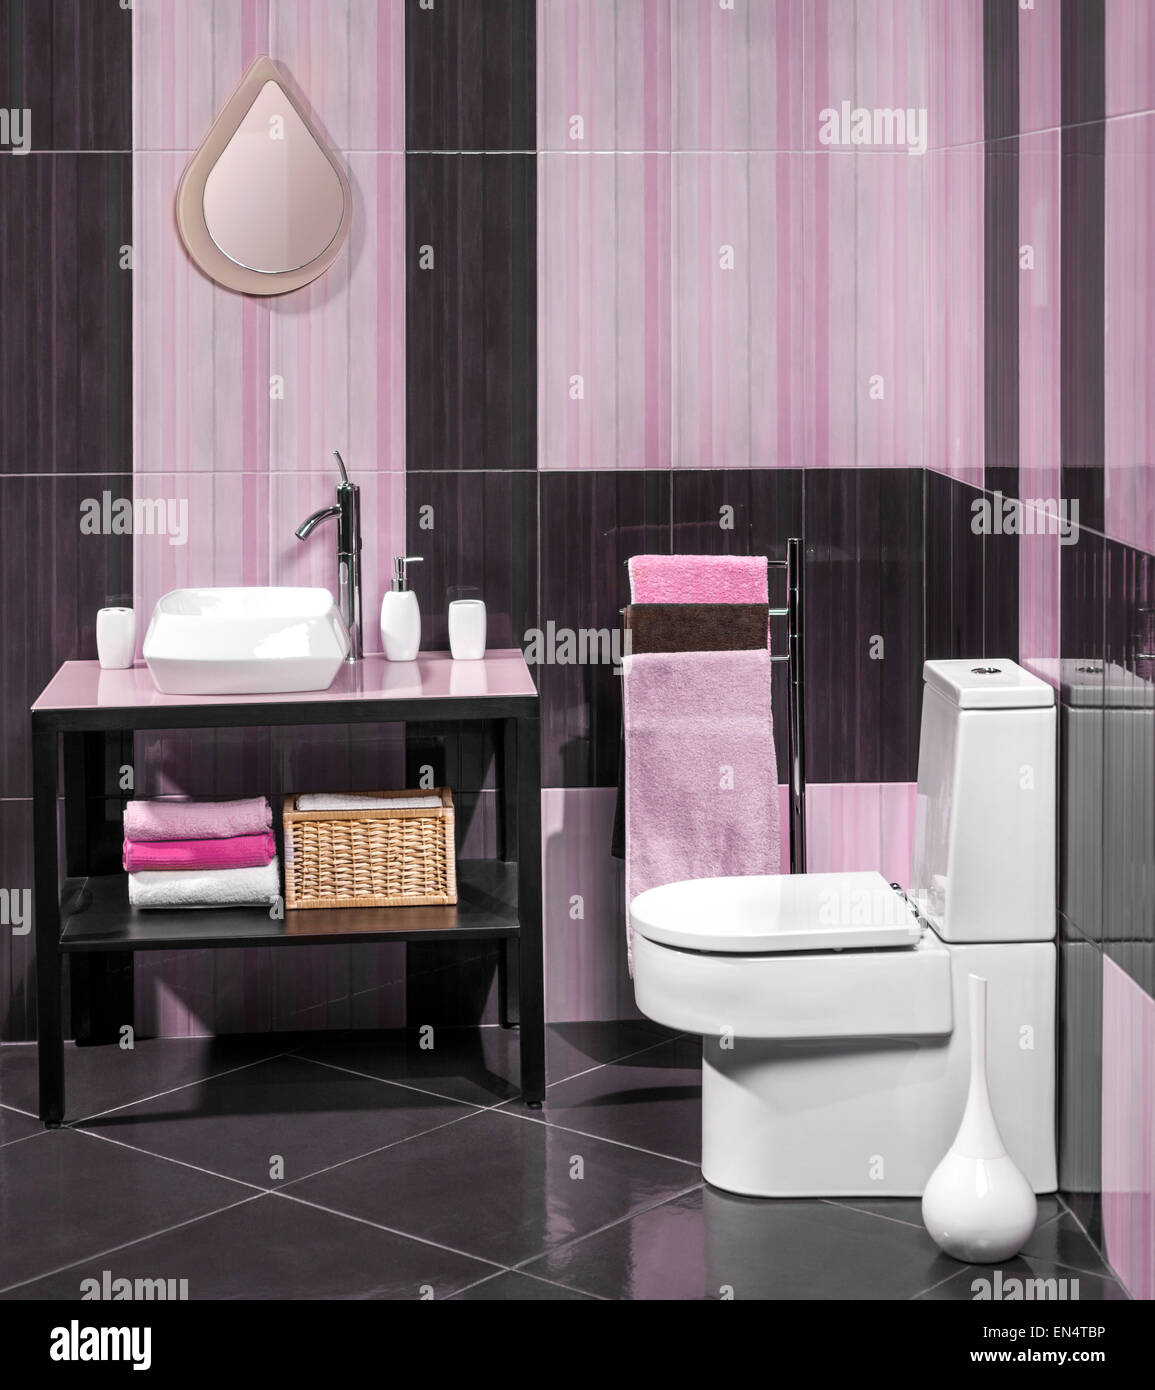 Détail d'une salle de bains moderne avec lavabo et toilettes Banque D'Images